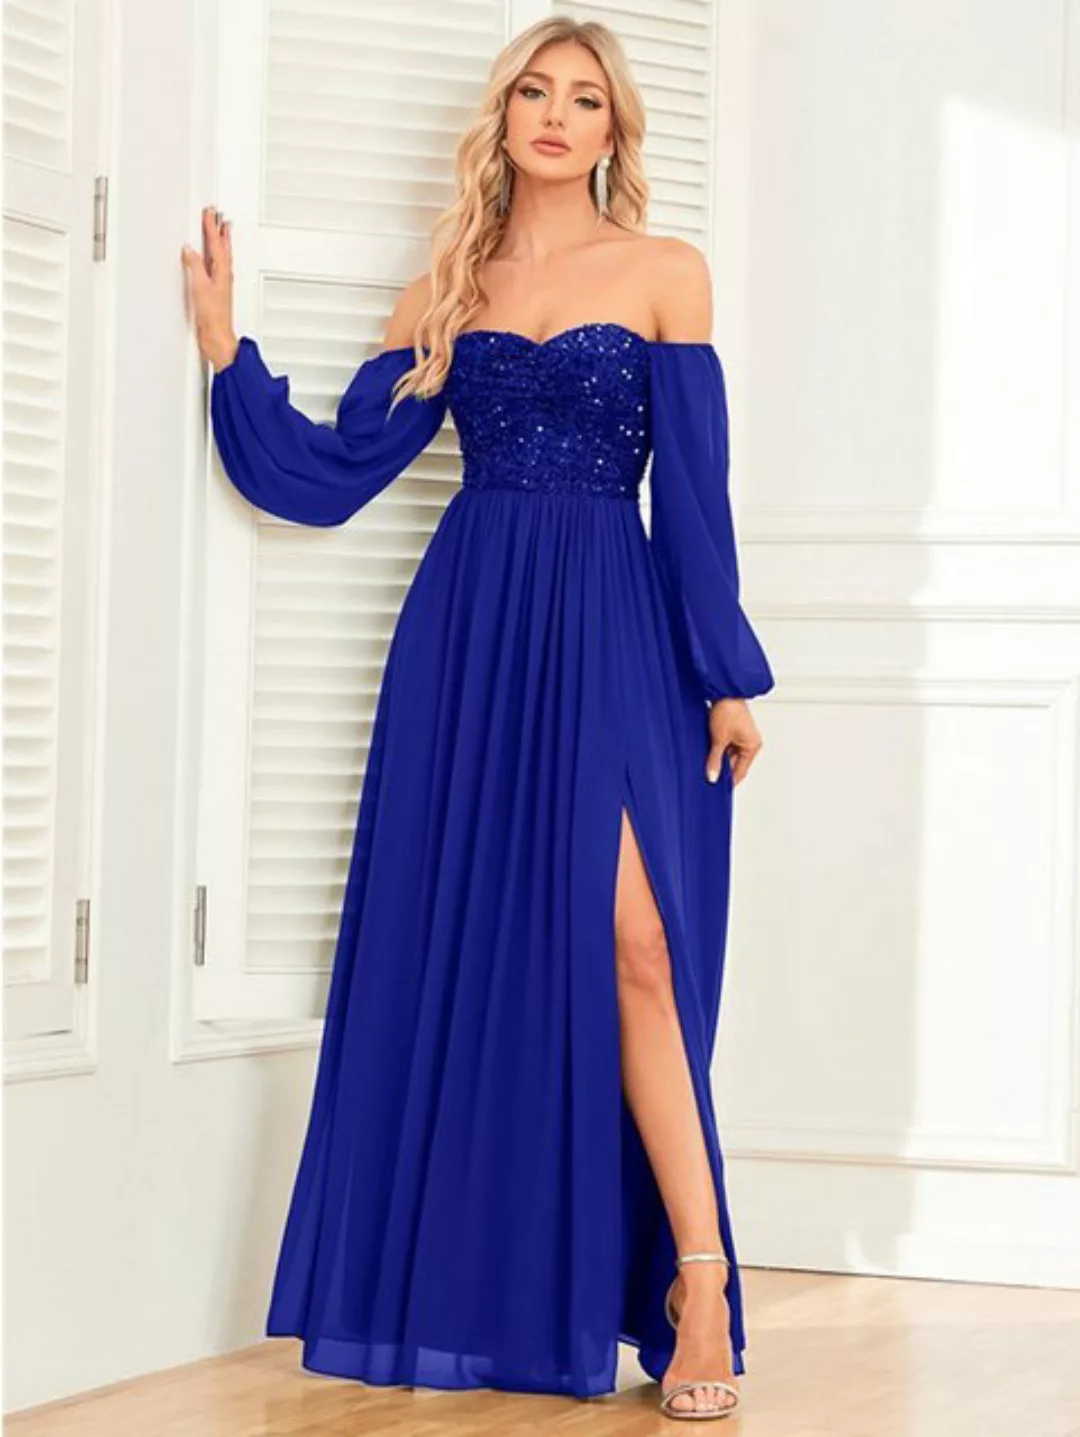 ZWY Abendkleid Elegantes, vielseitig einsetzbares One-Shoulder-Schnürkleid günstig online kaufen